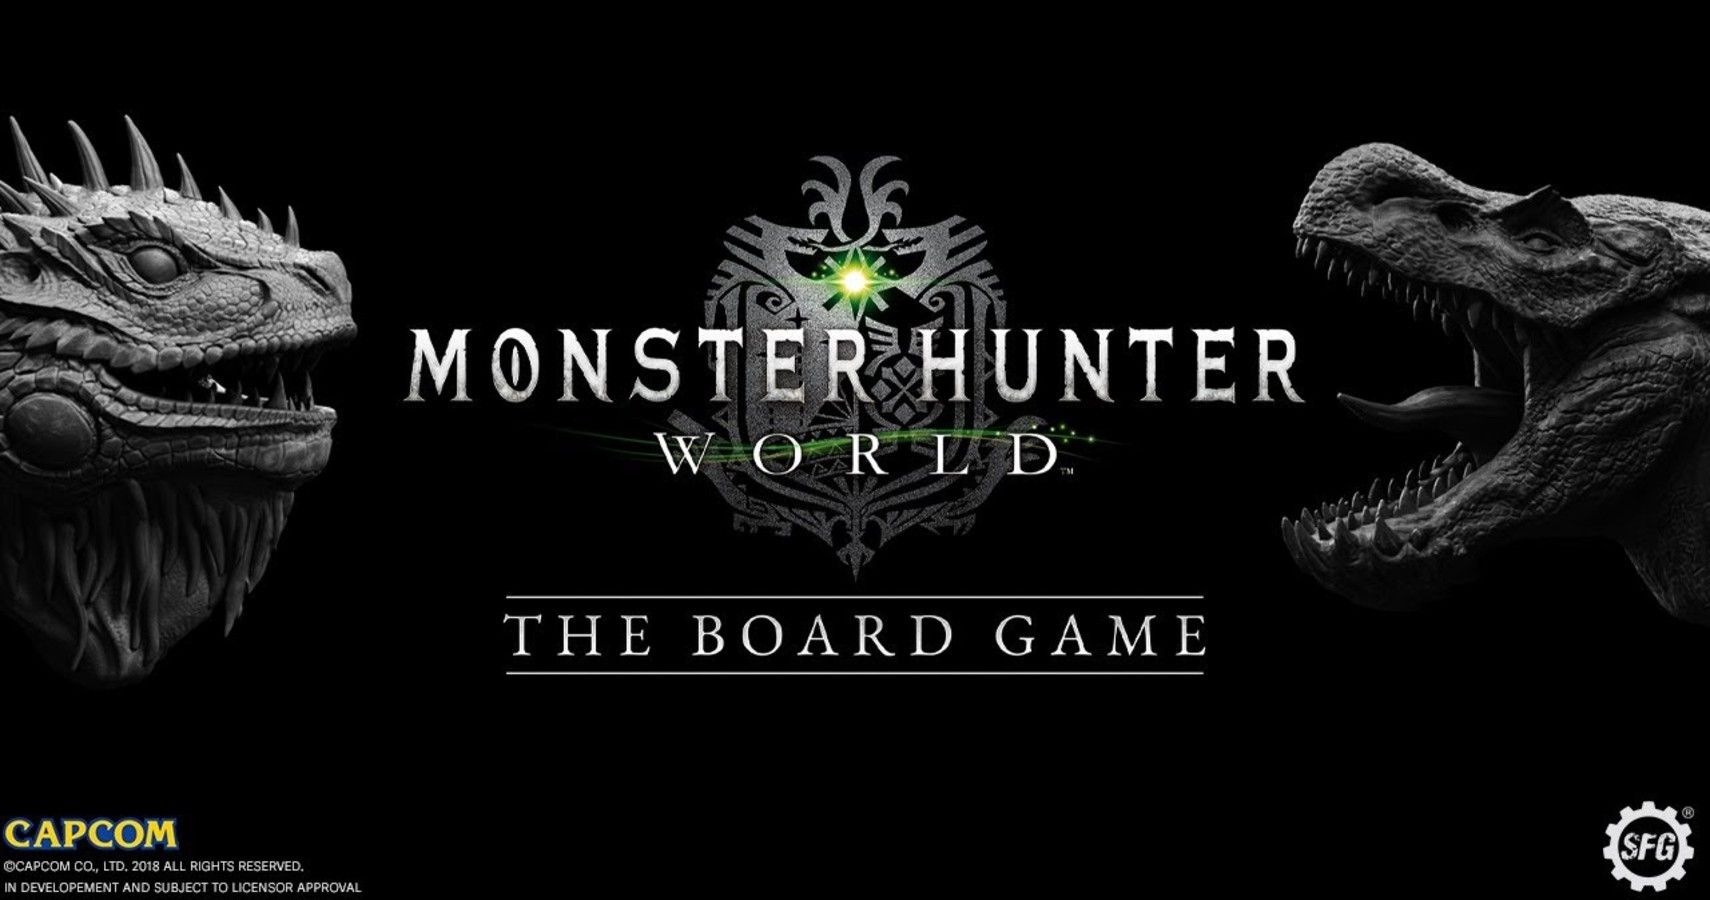 Teaser Trailer image for Monster Hunter: The Board Game Youtube video